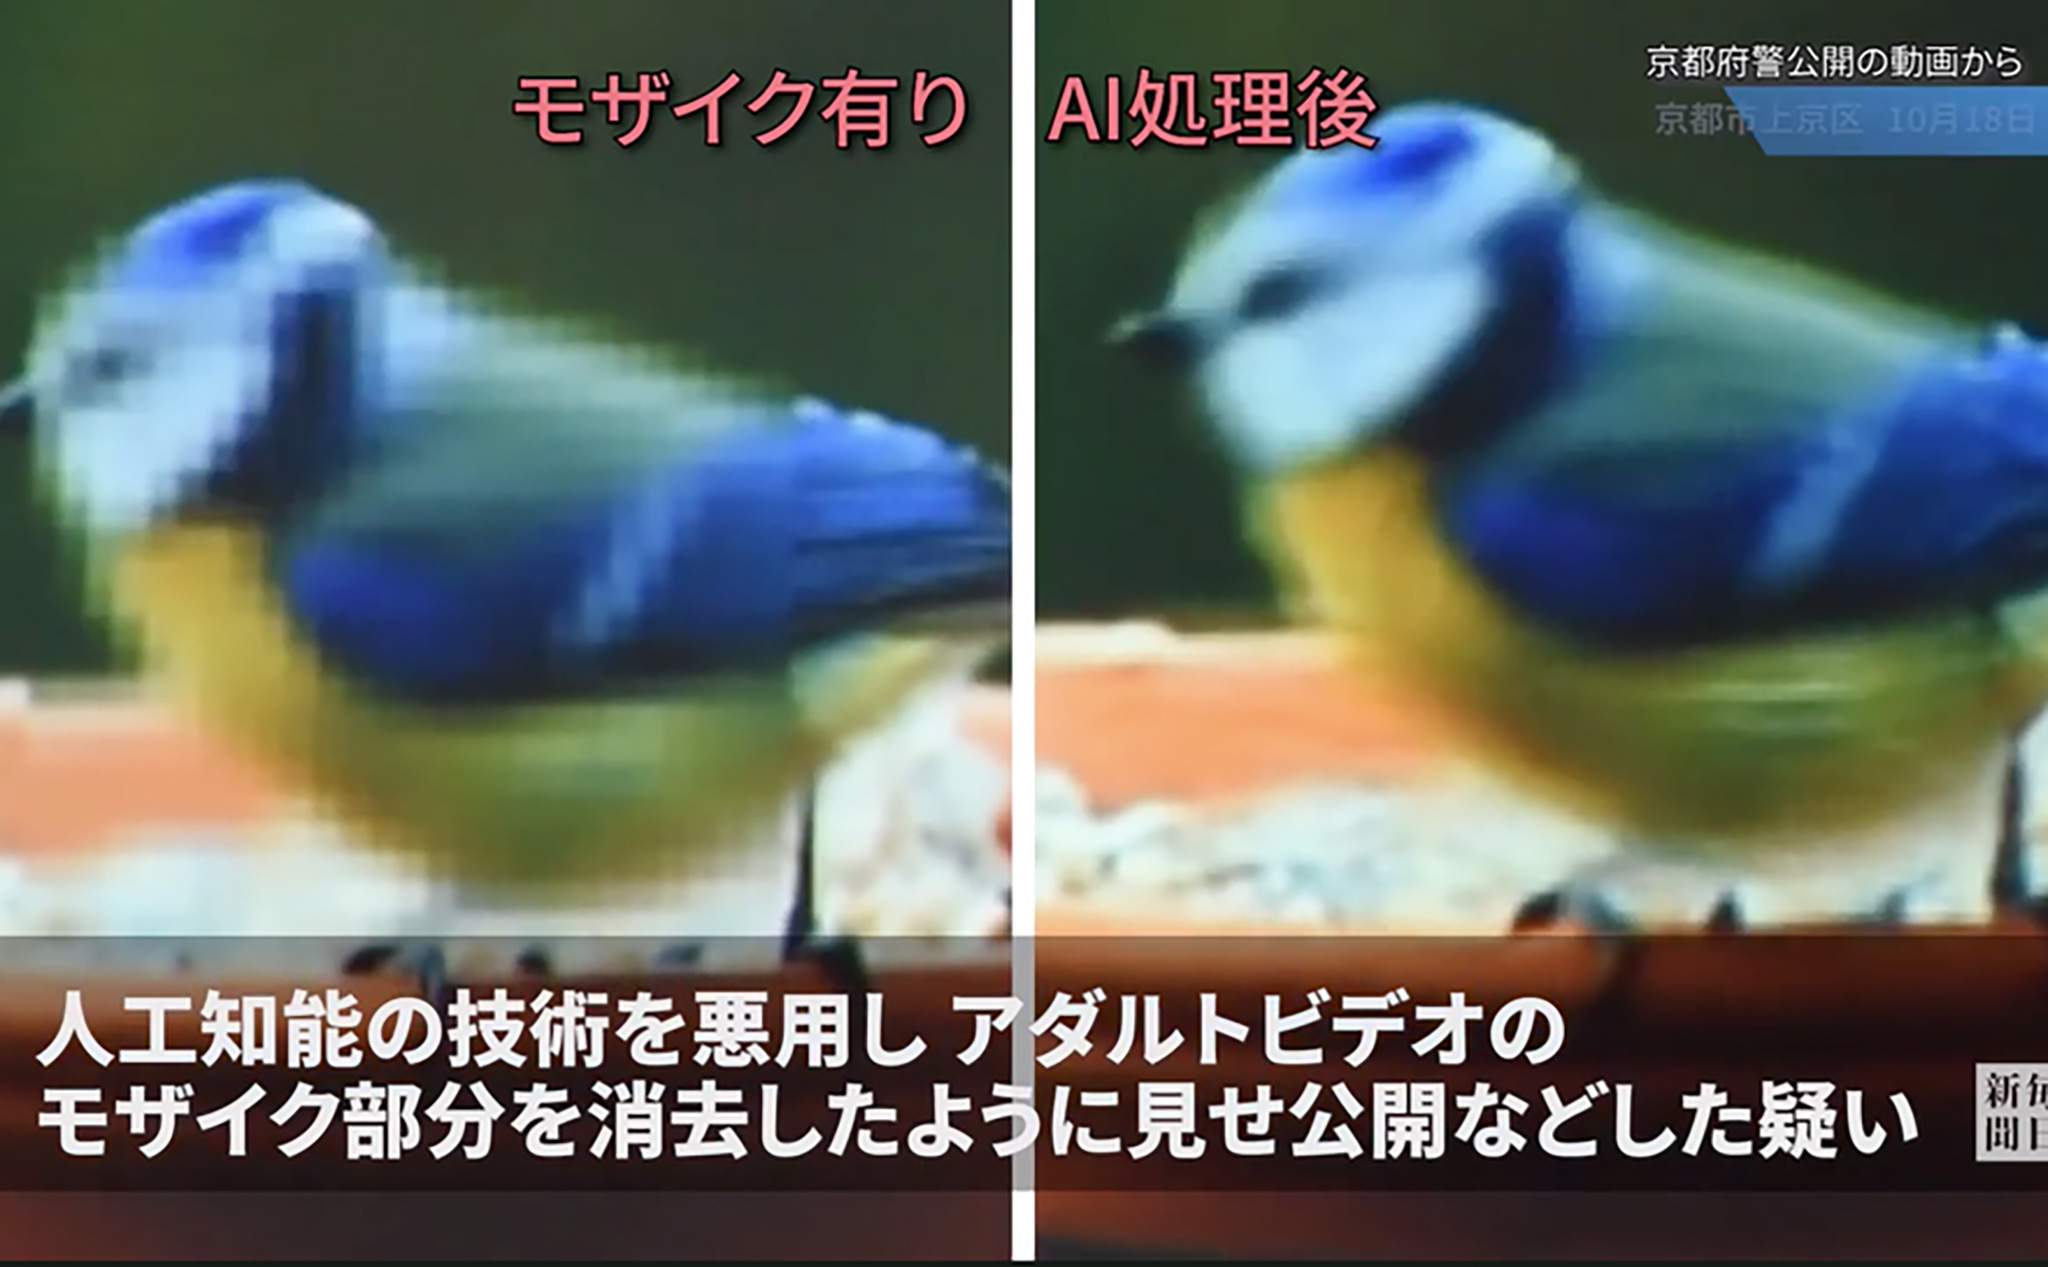 Sử dụng deepfake để làm nét cảnh bị làm mờ của phim xxx, người đàn ông Nhật bị cảnh sát bắt giữ